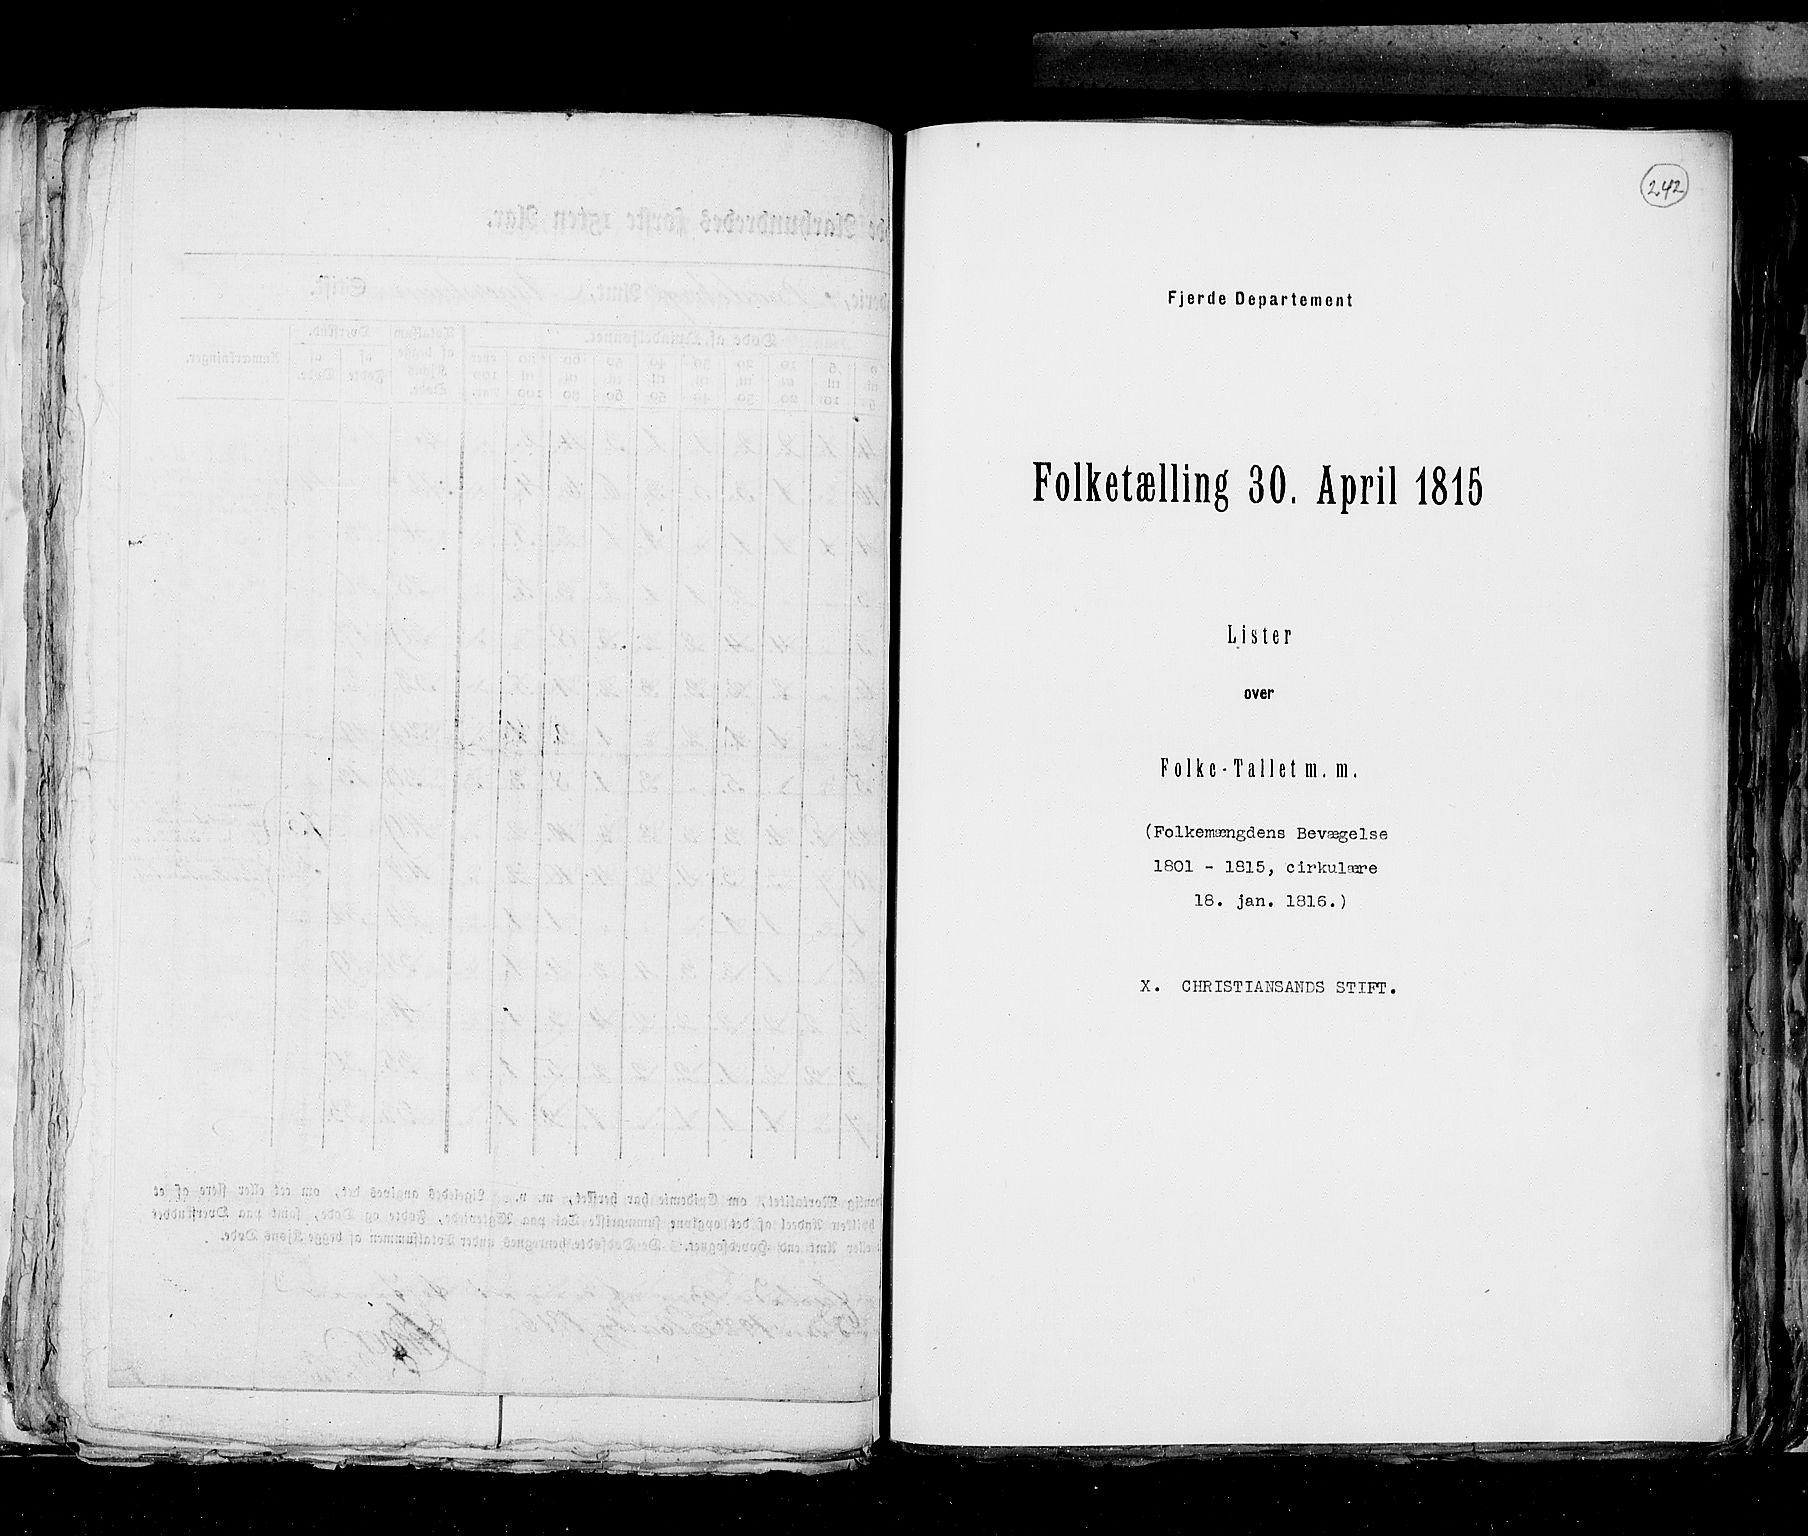 RA, Folketellingen 1815, bind 6: Folkemengdens bevegelse i Akershus stift og Kristiansand stift, 1815, s. 242